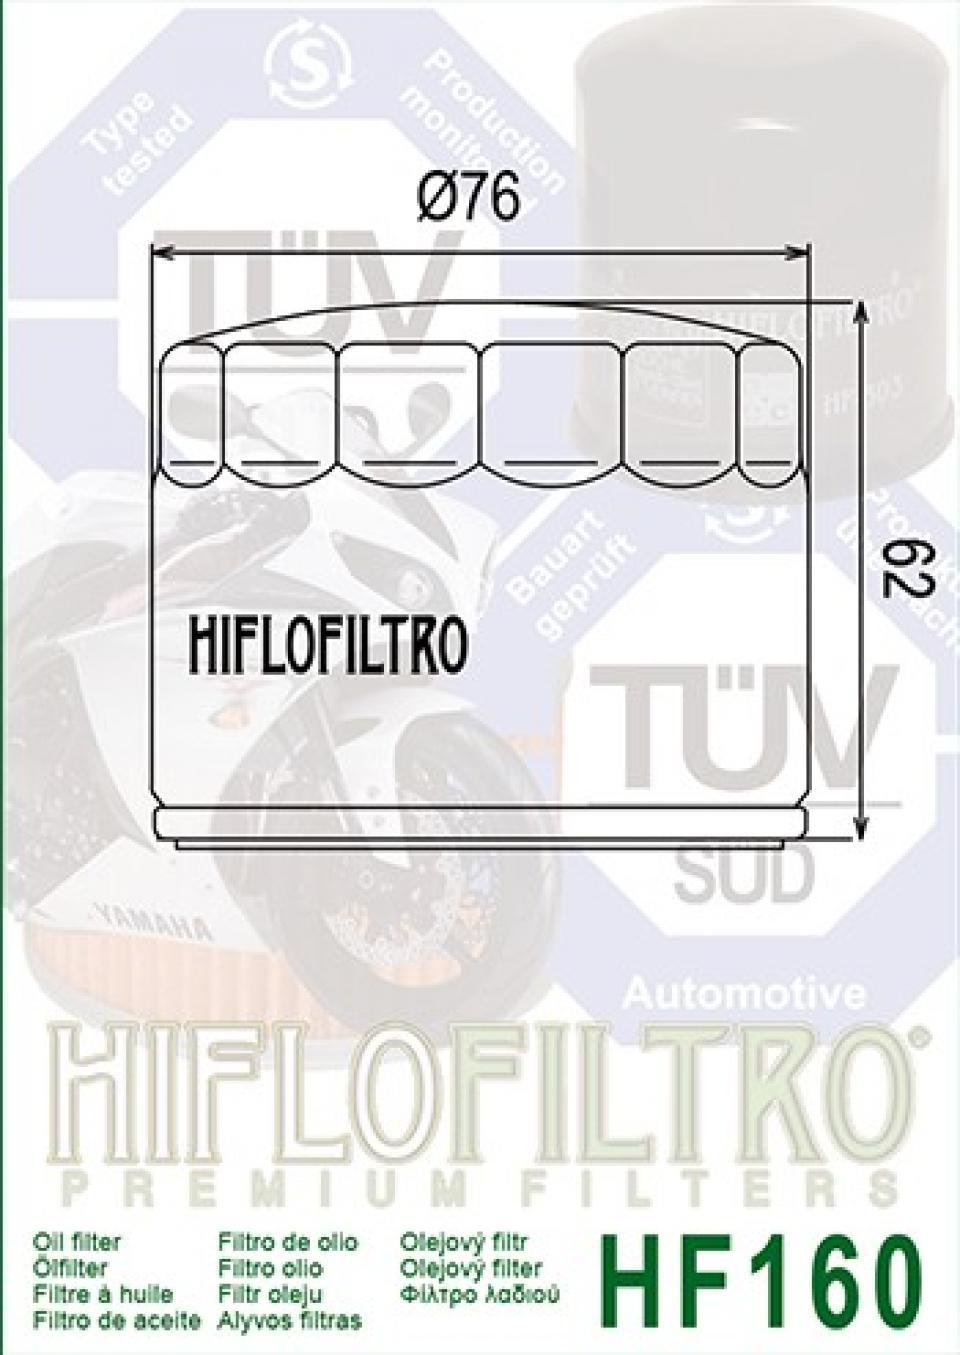 Filtre à huile Hiflofiltro pour Auto HF160 Neuf